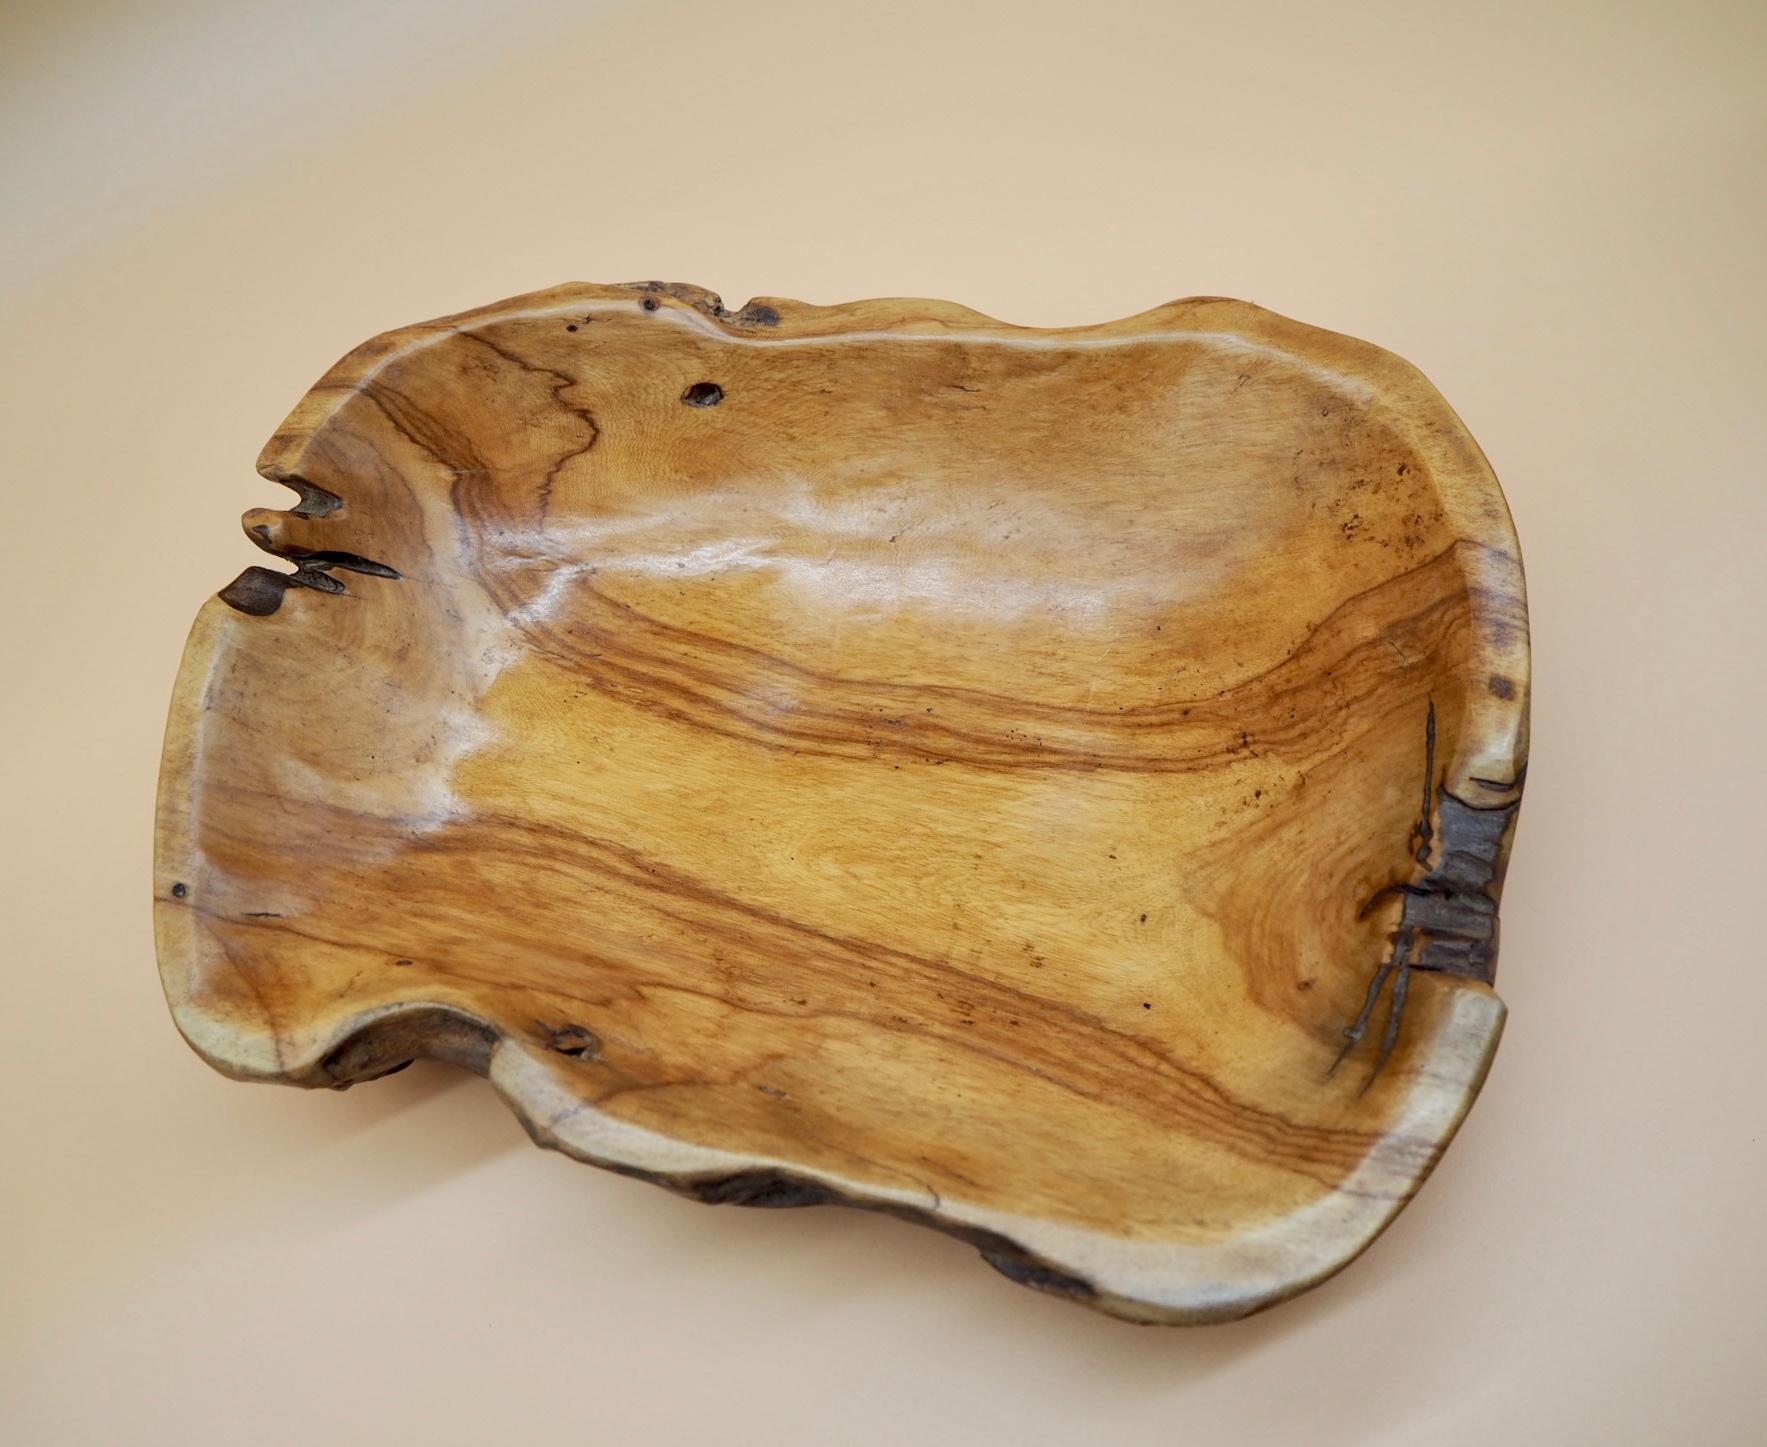 Vide Poche by Lulli : Un vide poche en bois d'ébène.

Mesures : 32 cm x 25 cm x 8 cm
12.6